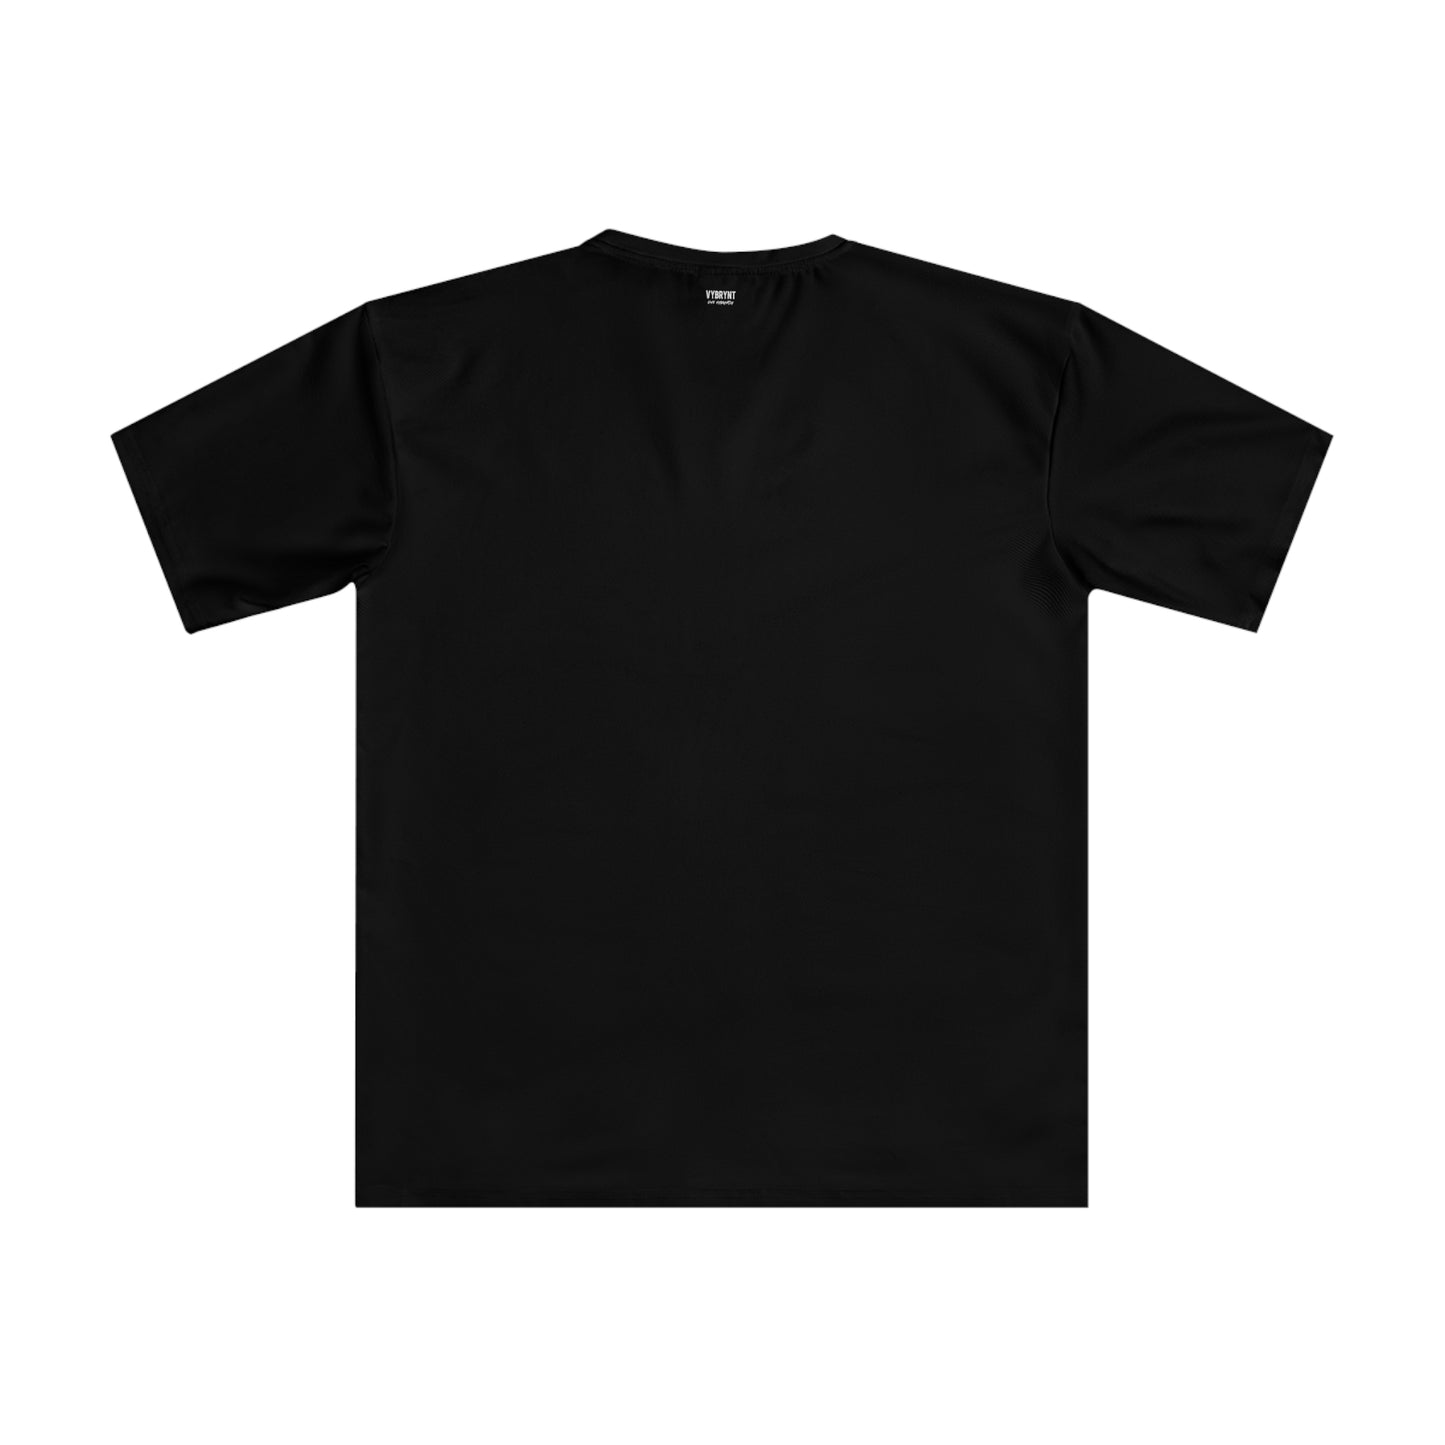 Espresso Metro Men's Black T-shirt